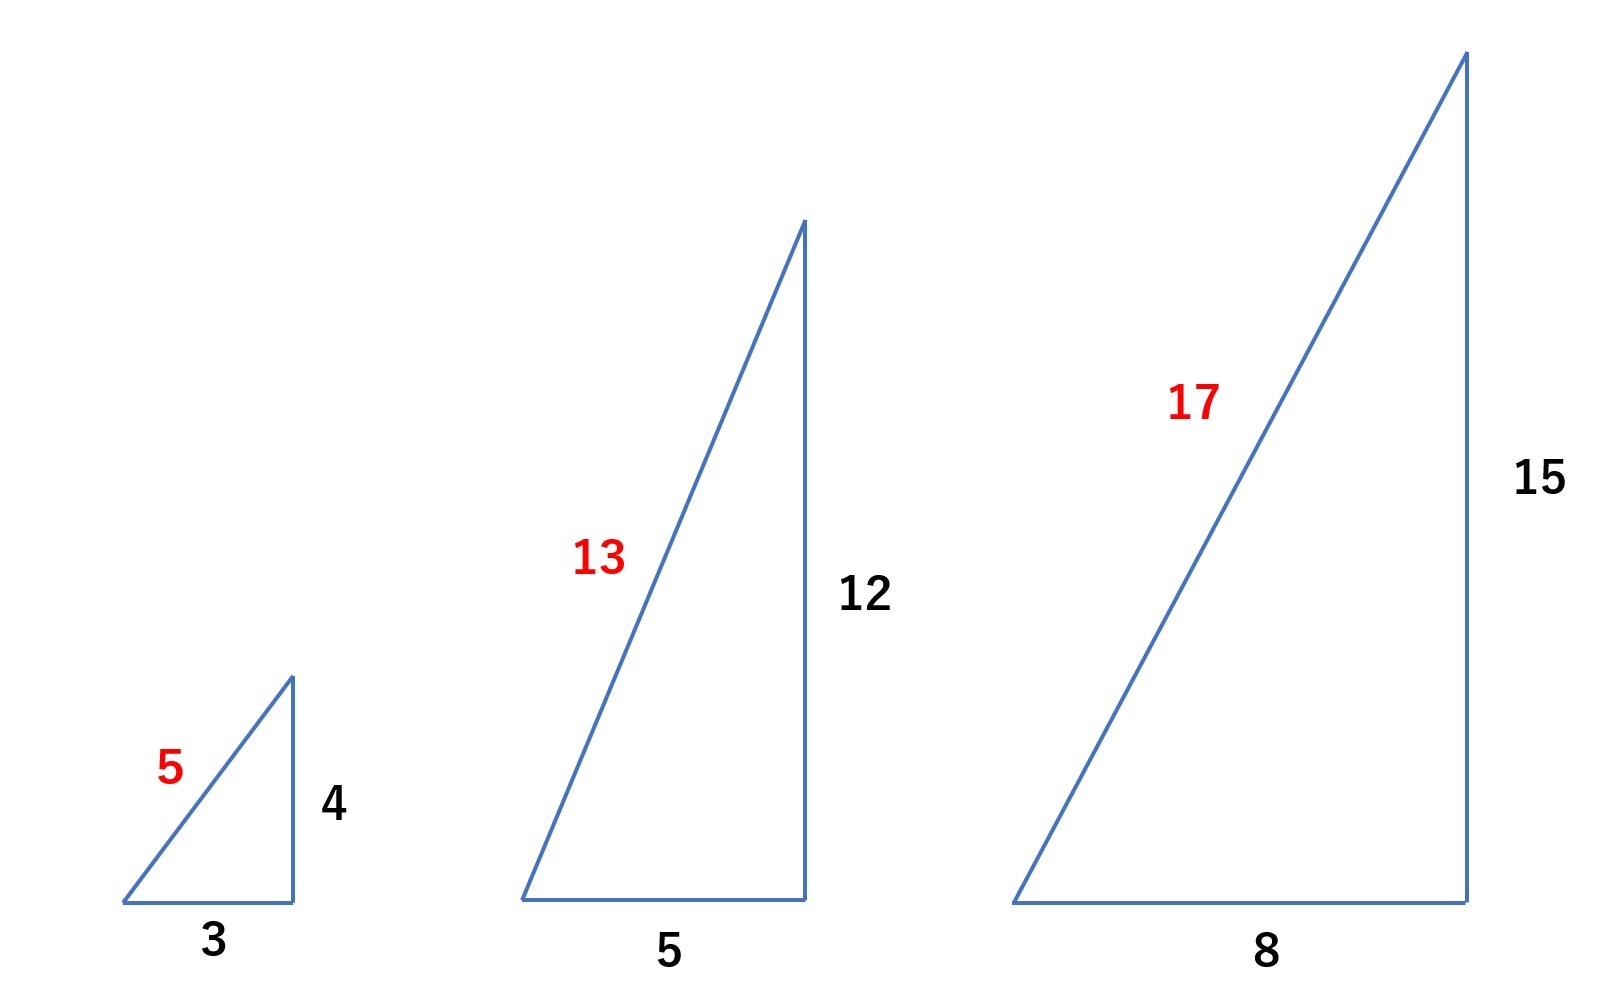 和から 大人のための数学 統計教室 三平方の定理といえば 3 4 5 5 12 13 といった自然数の ３つ組が有名です 実は5 13 17のように 4で割って1余る素数 は必ずピタゴラスの3つ組の斜辺になります 素敵ですね 斜辺が29 37 41 53